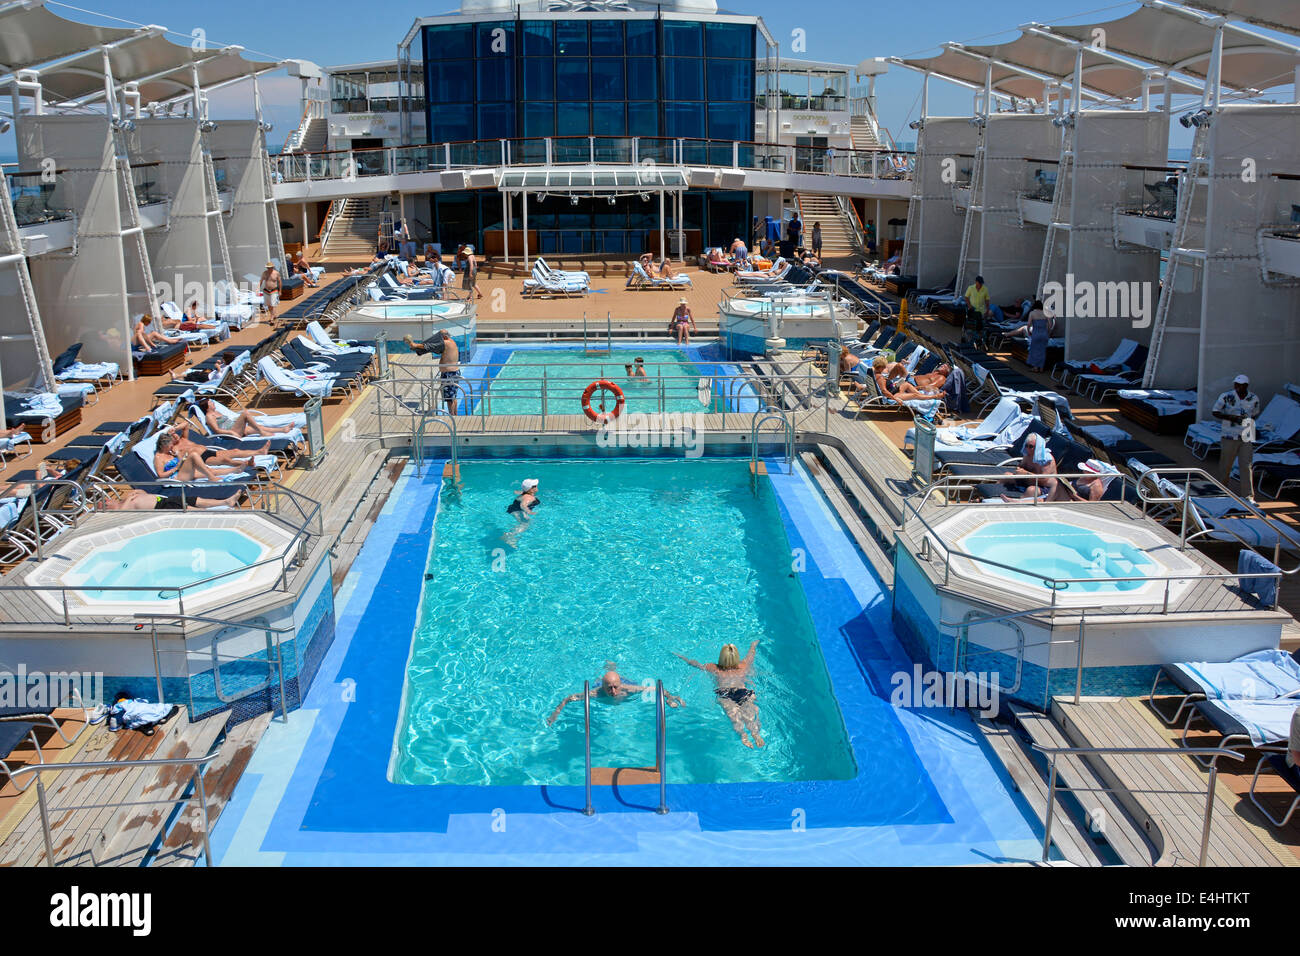 Persone in ocean liner cruise ship nuoto in piscina e relax sulle sedie a sdraio per prendere il sole mare Adriatico al largo della costa Italia Europa Foto Stock